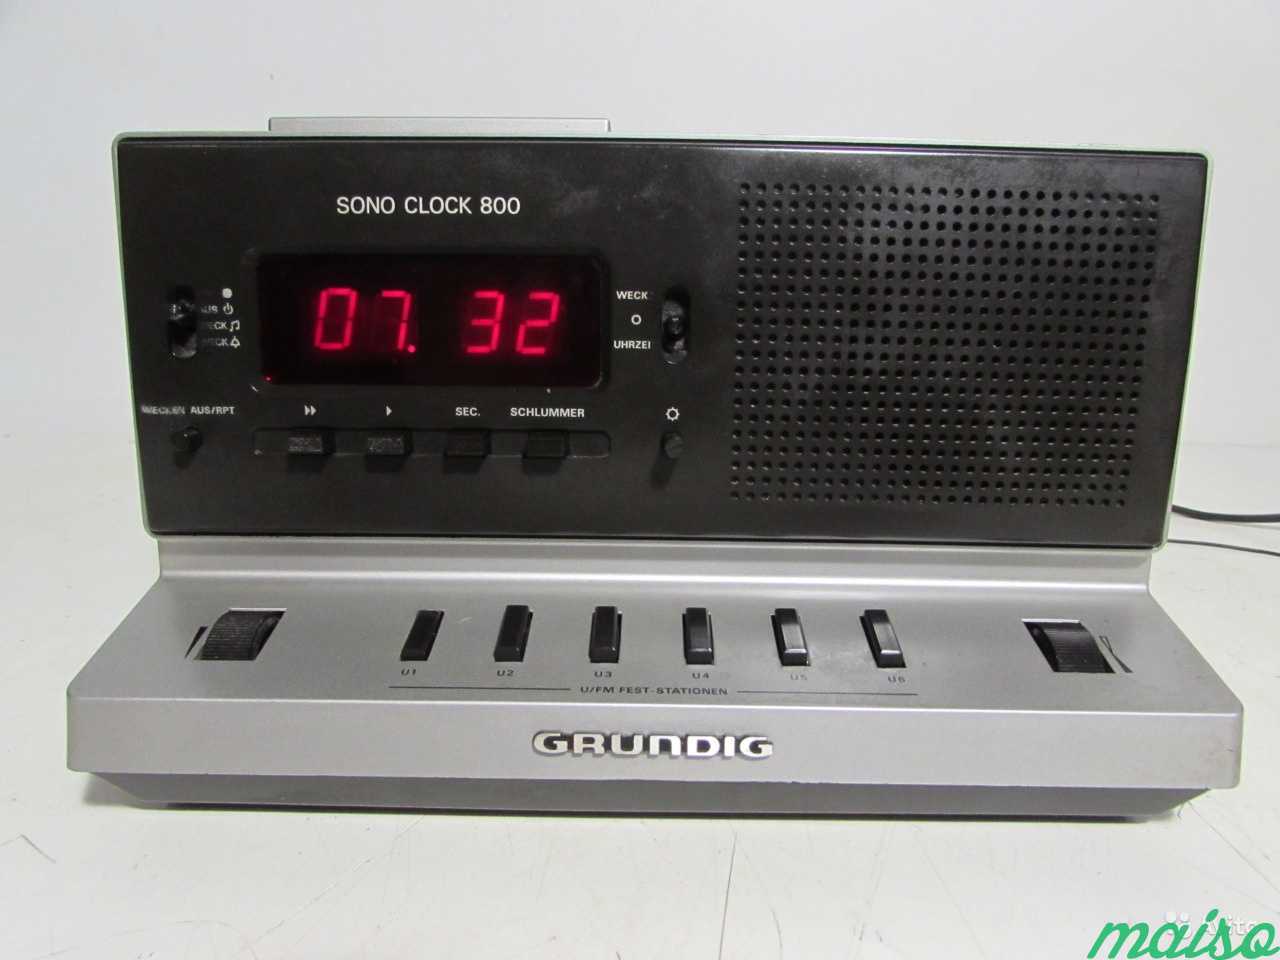 Grundig Sono Clock 800 Радио+Часы в Санкт-Петербурге. Фото 1